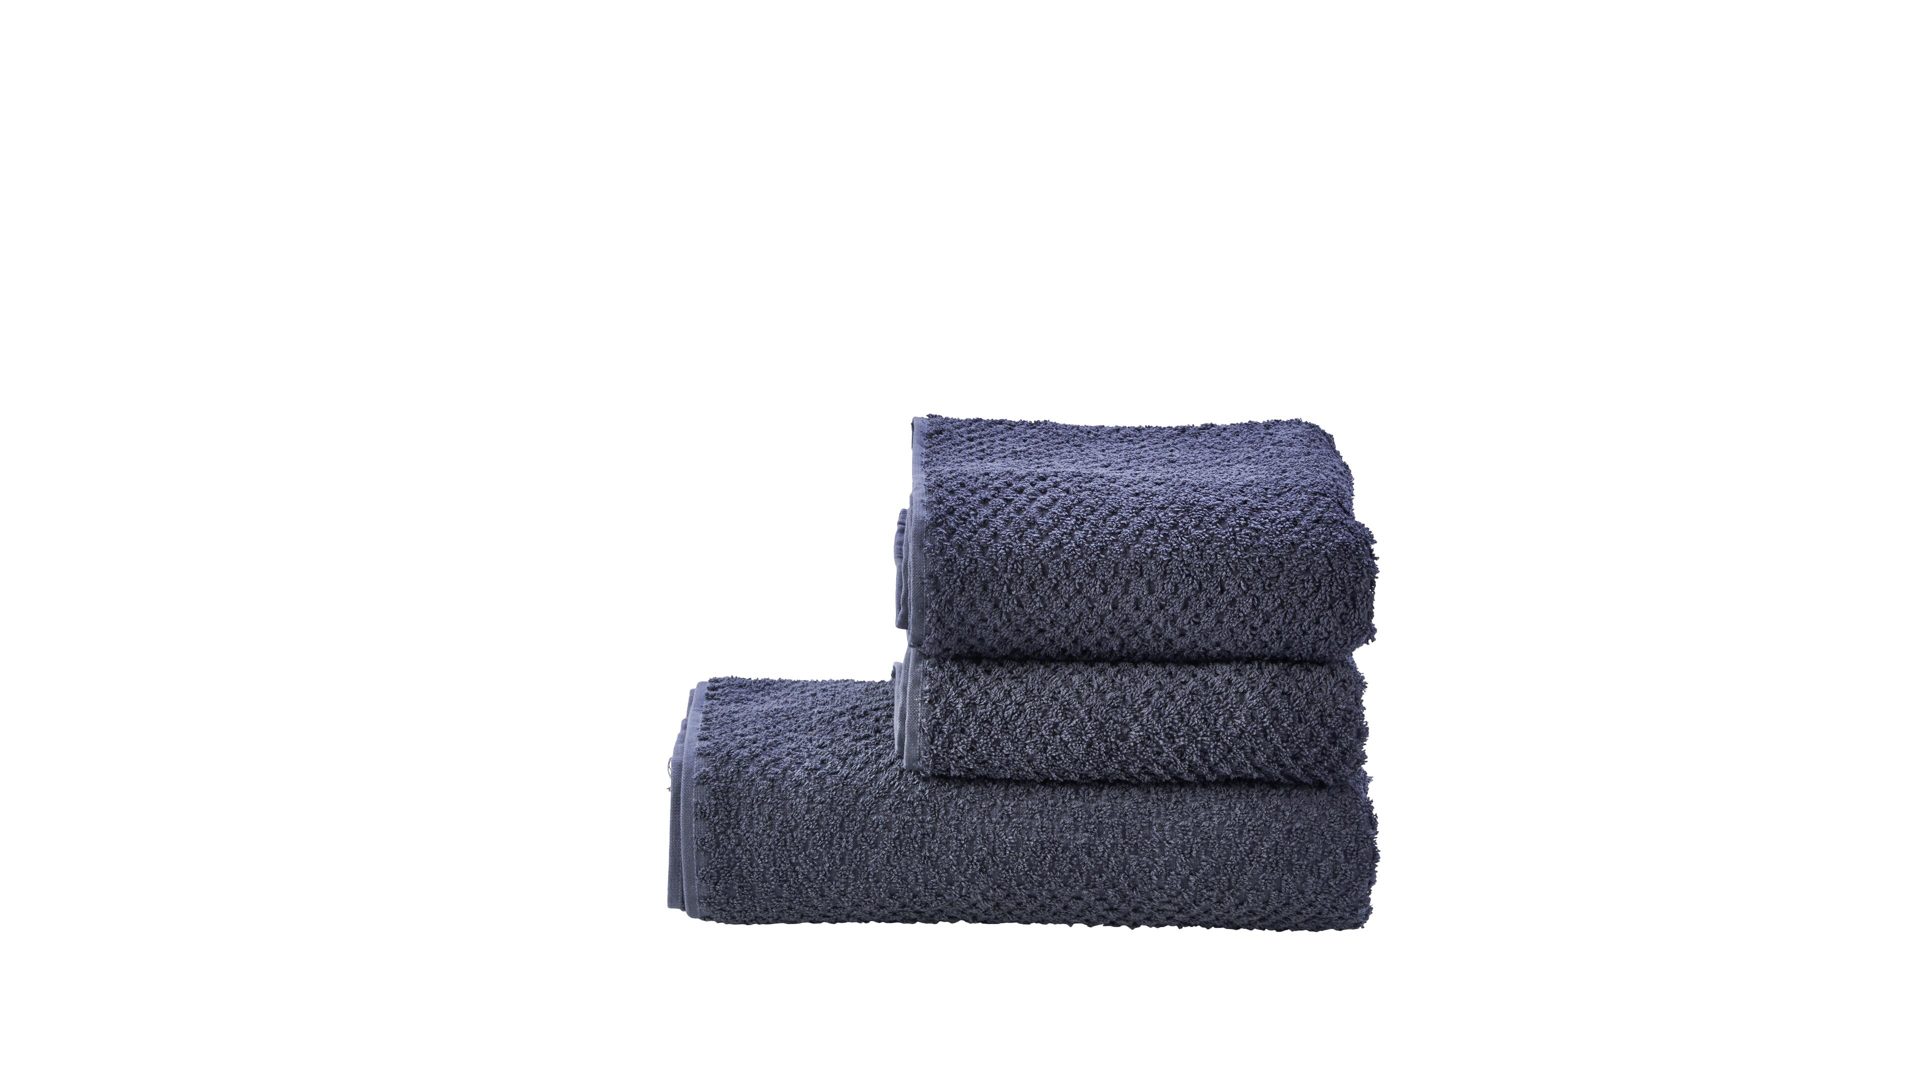 Handtuch-Set Done® be different aus Stoff in Anthrazit DONE® Handtuch-Set Provence Honeycomb - Heimtextilien anthrazitfarbene Baumwolle  – dreiteilig